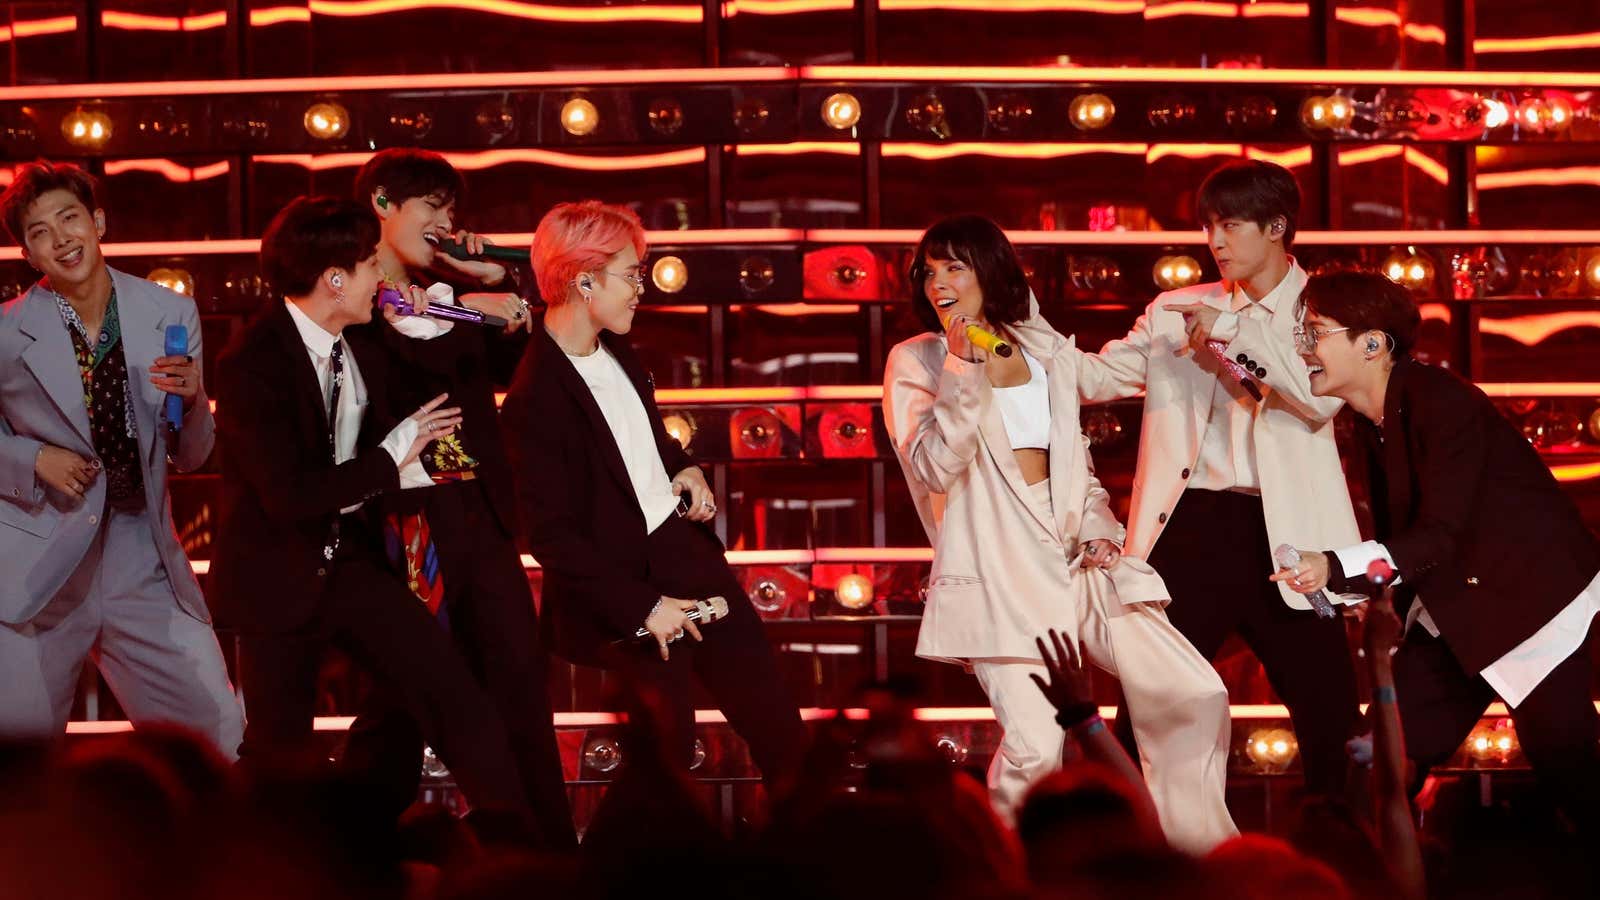 BTS at the 2019 Billboard Music Awards on May 1.